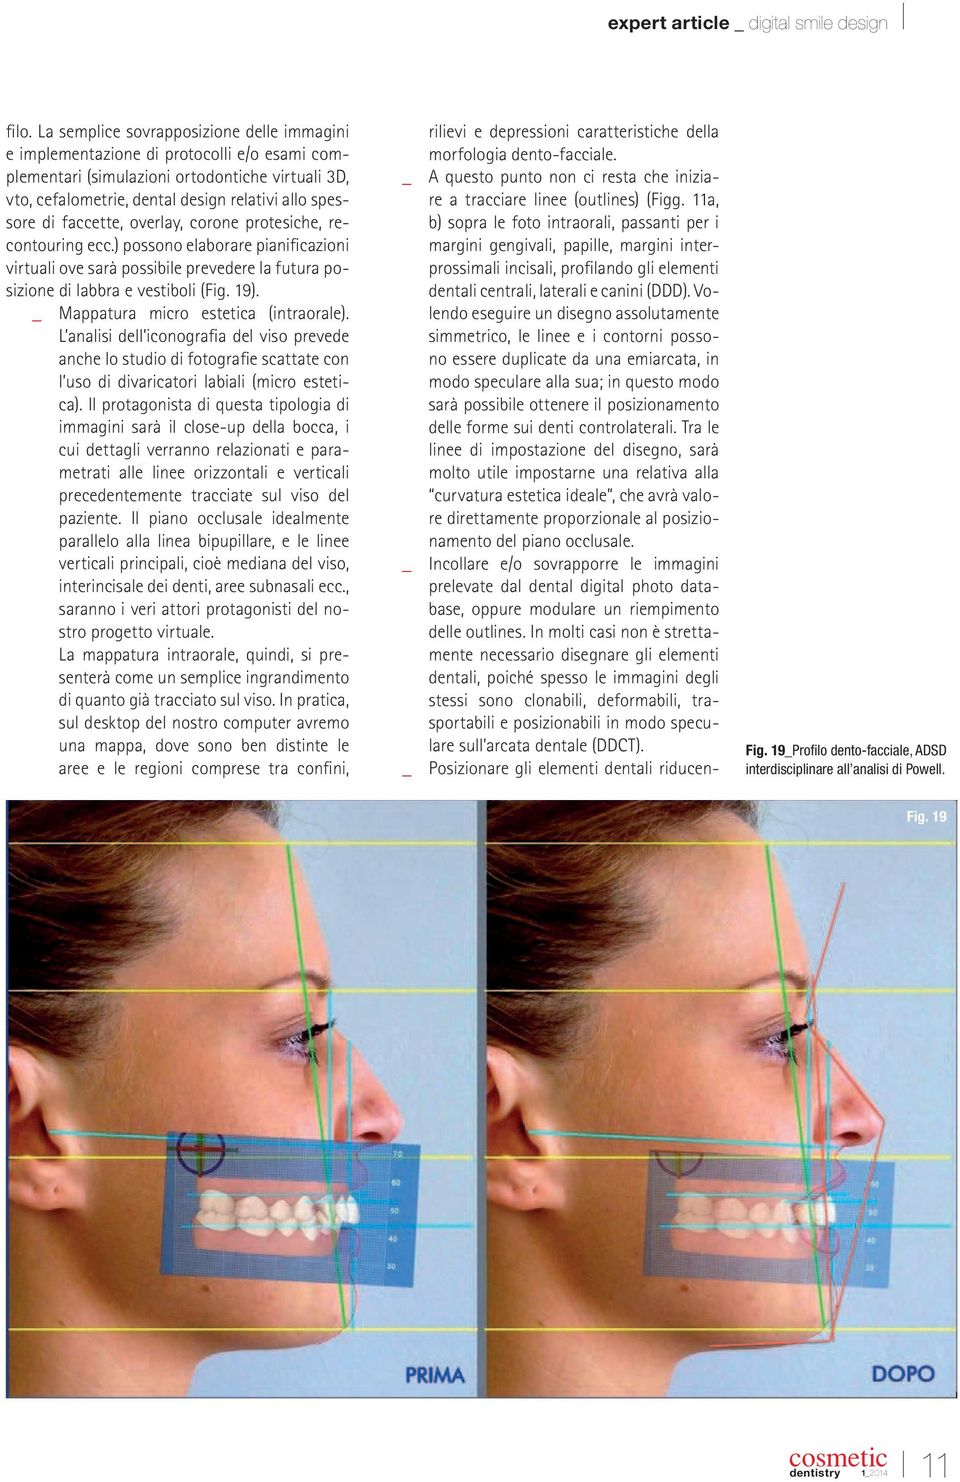 _ Mappatura micro estetica (intraorale). L analisi dell iconograia del viso prevede anche lo studio di fotograie scattate con l uso di divaricatori labiali (micro estetica).